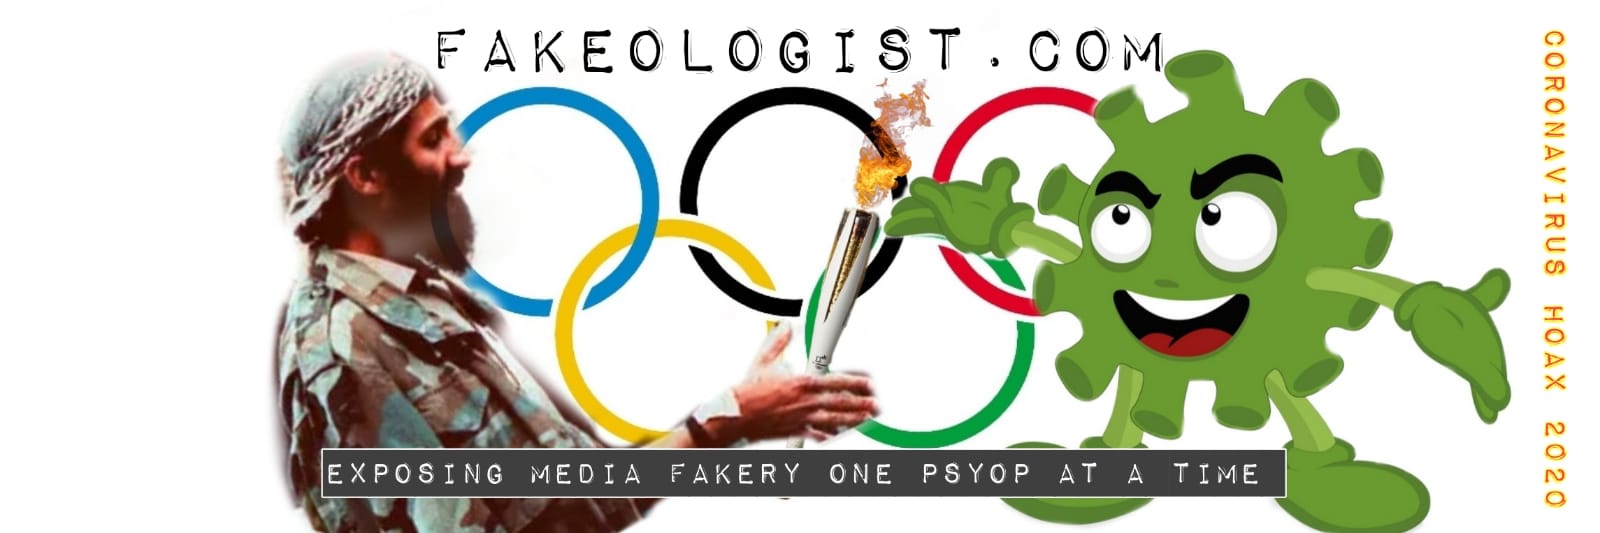 Fakeologist.com